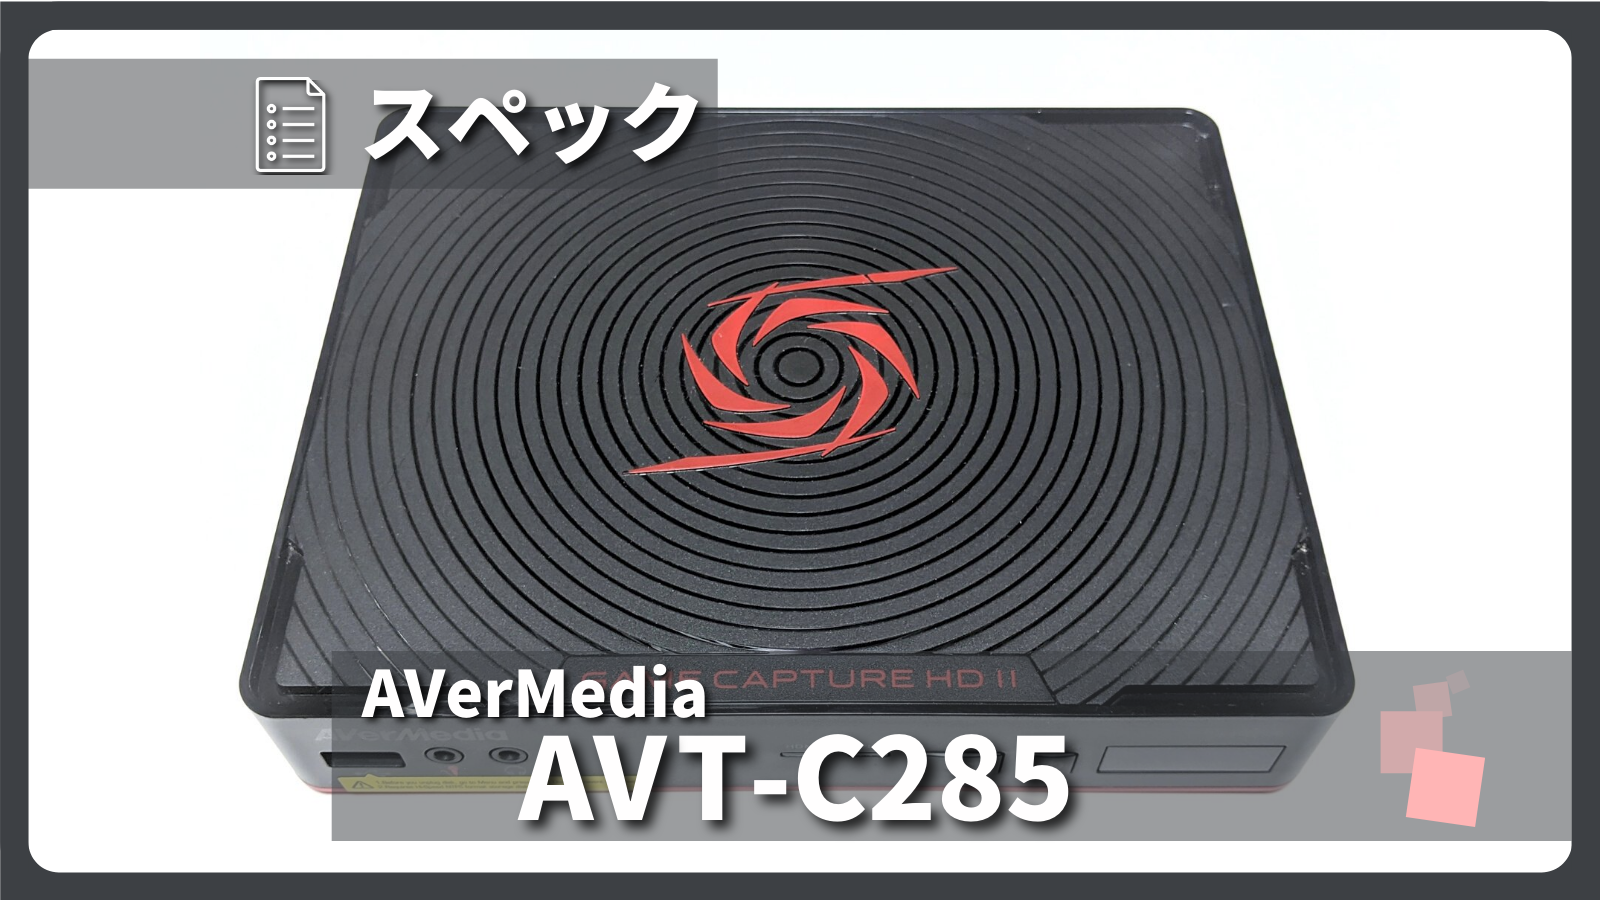 アイキャッチ画像・AVerMedia AVT-C285 スペック紹介